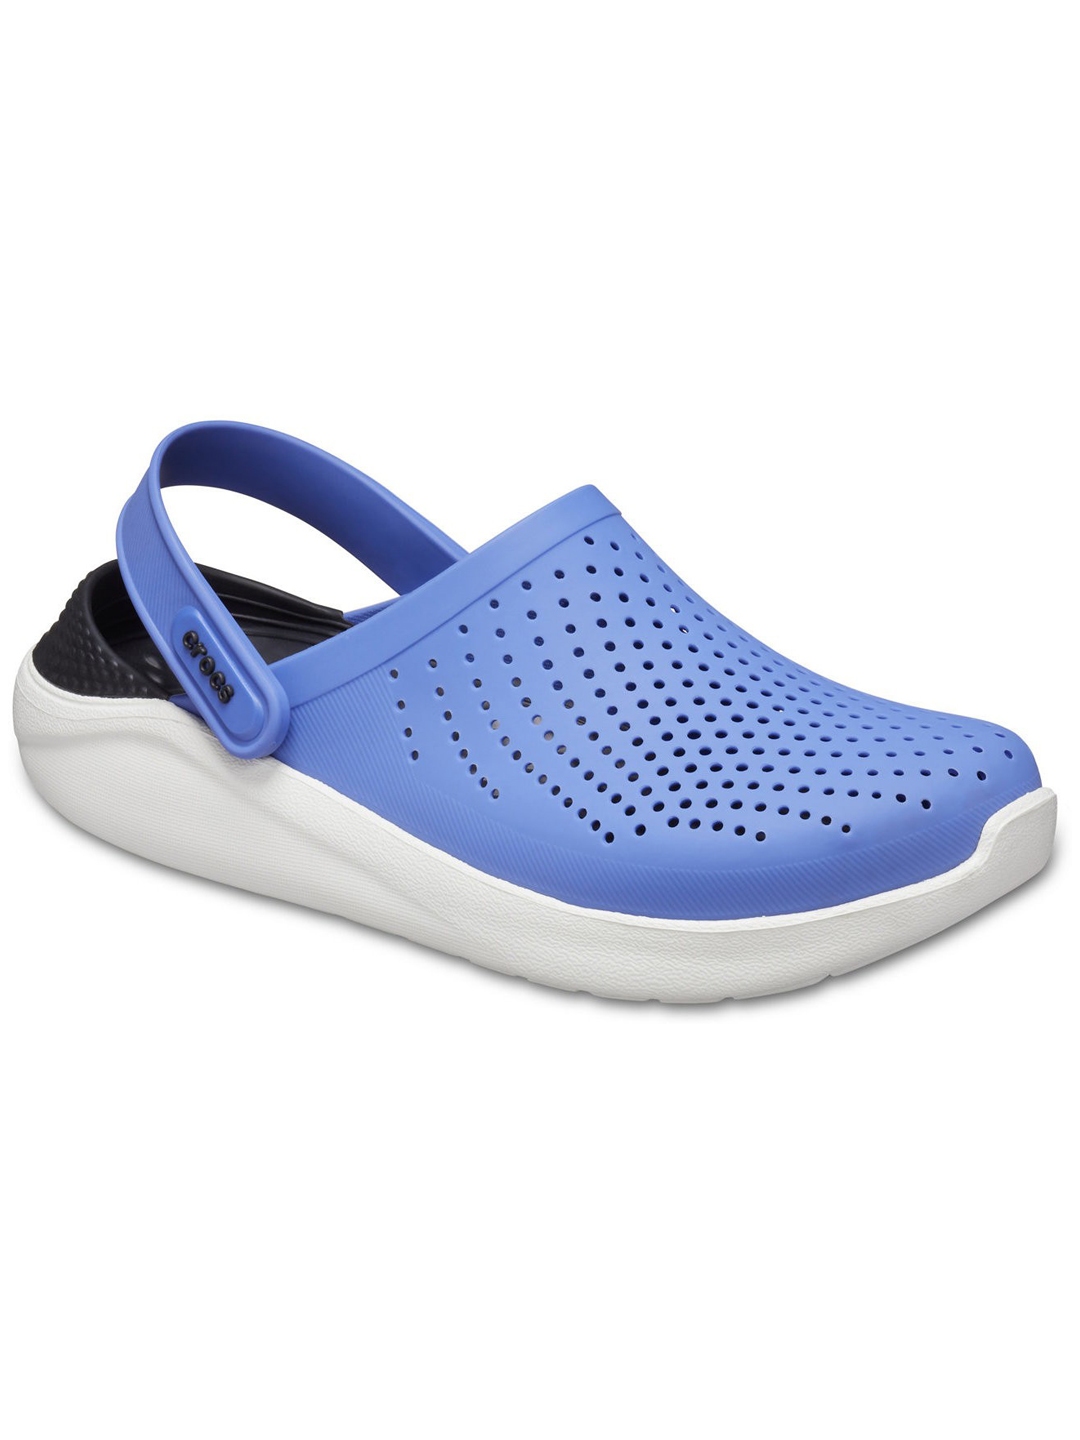 Buy Crocs Unisex Blue Clogs Sandals - Sandals for Unisex 12769184 | Myntra